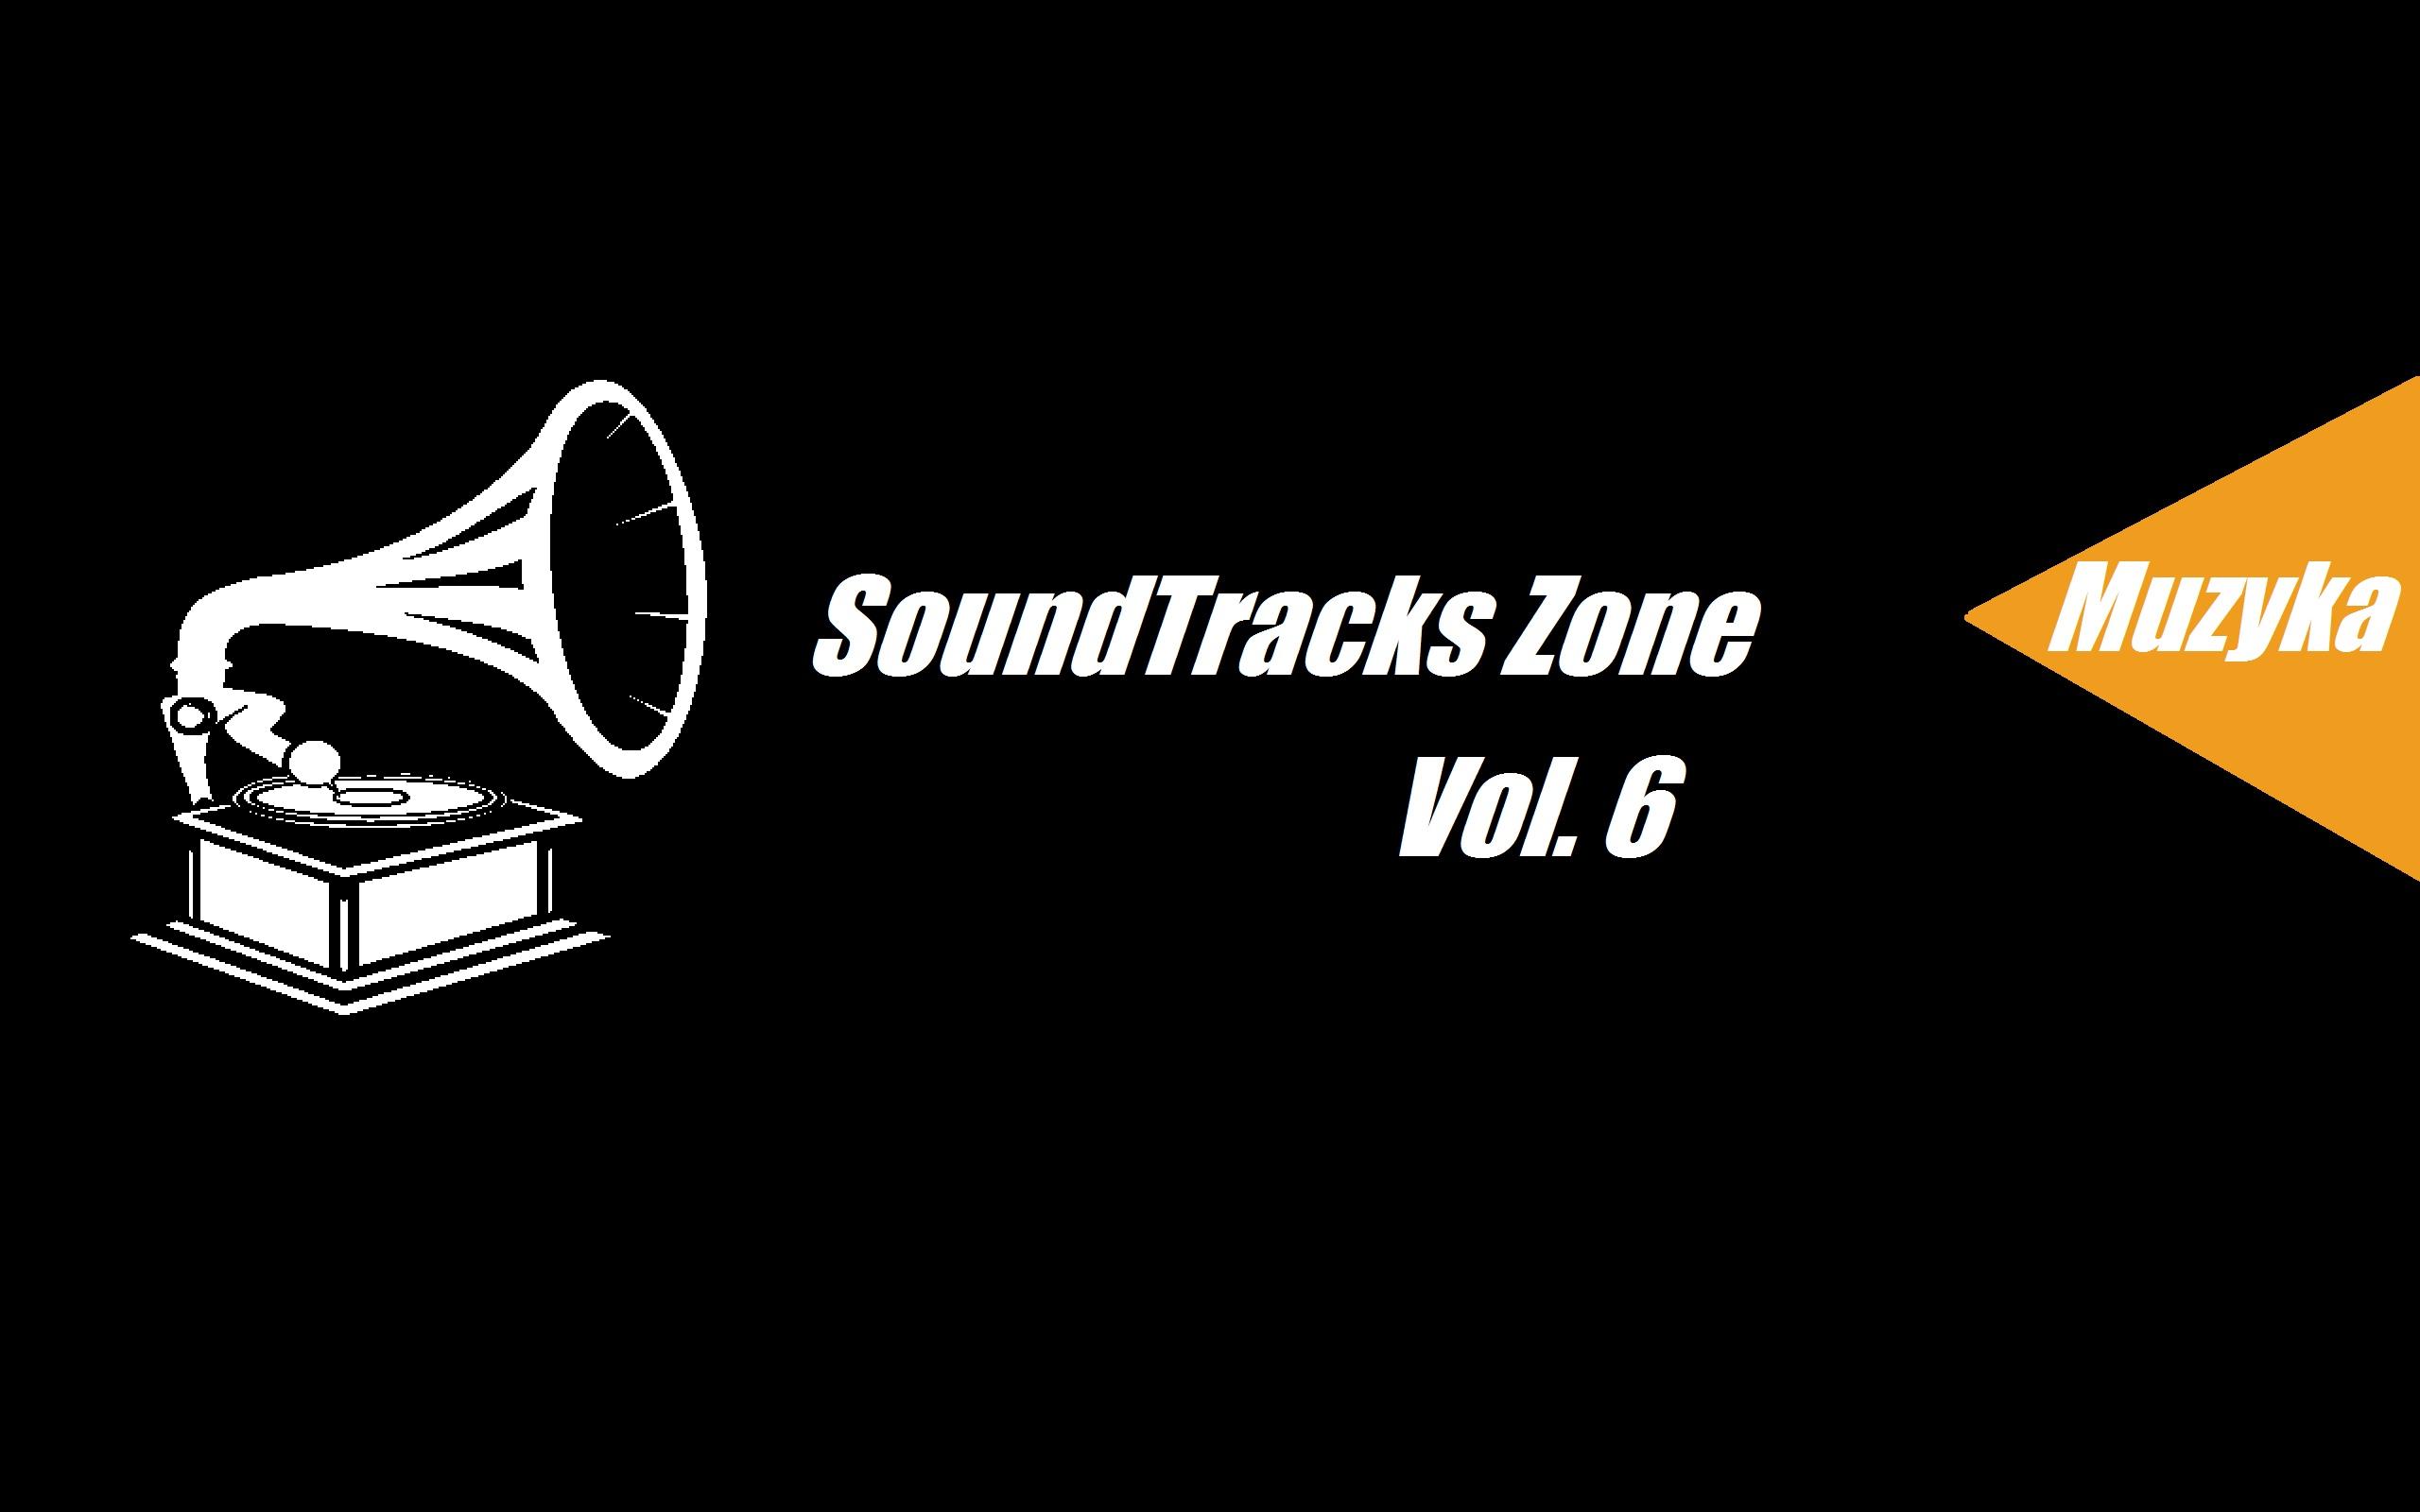 SoundTracks Zone Vol. 6